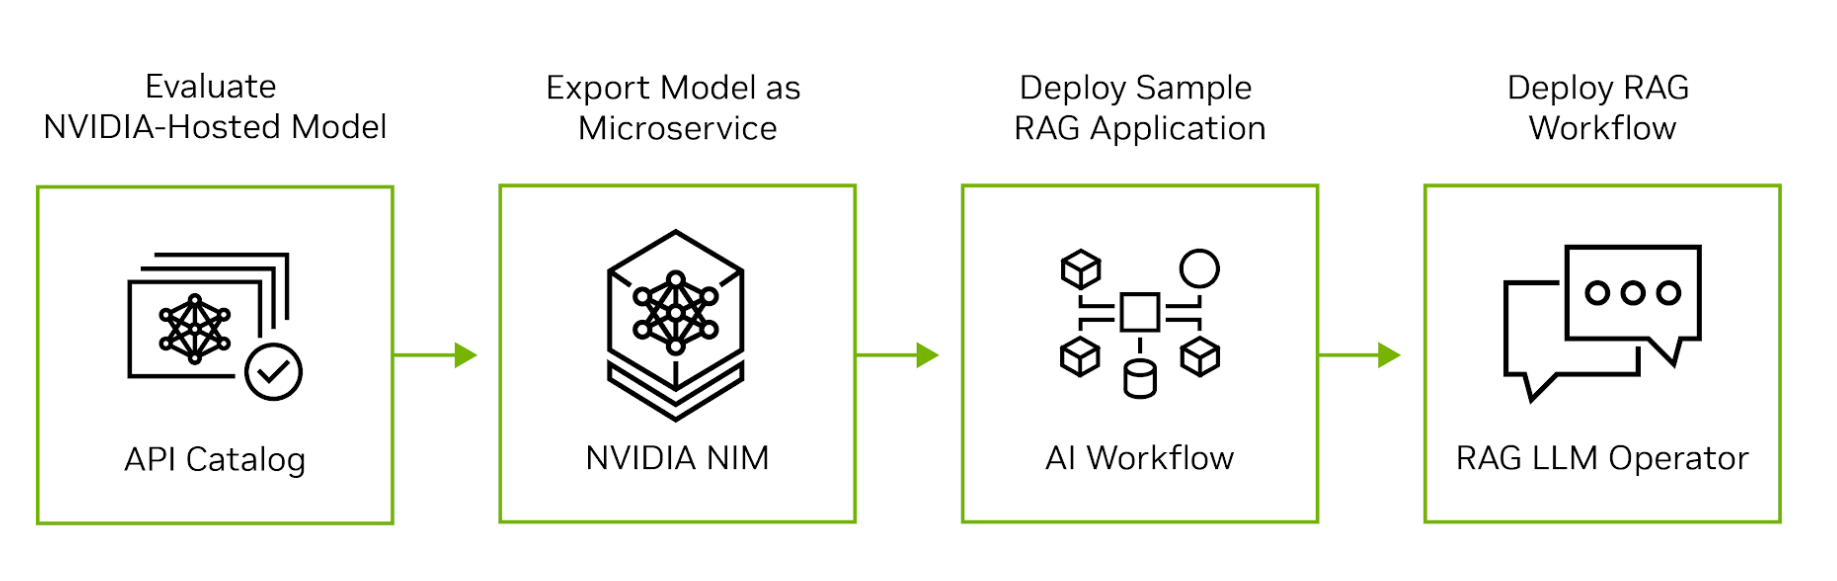 从NVIDIA API目录中的模型评估开始，将模型导出为微服务，开发示例应用程序，然后部署到生产环境中，图中显示了RAG应用程序如何从试验阶段转移到生产阶段。
